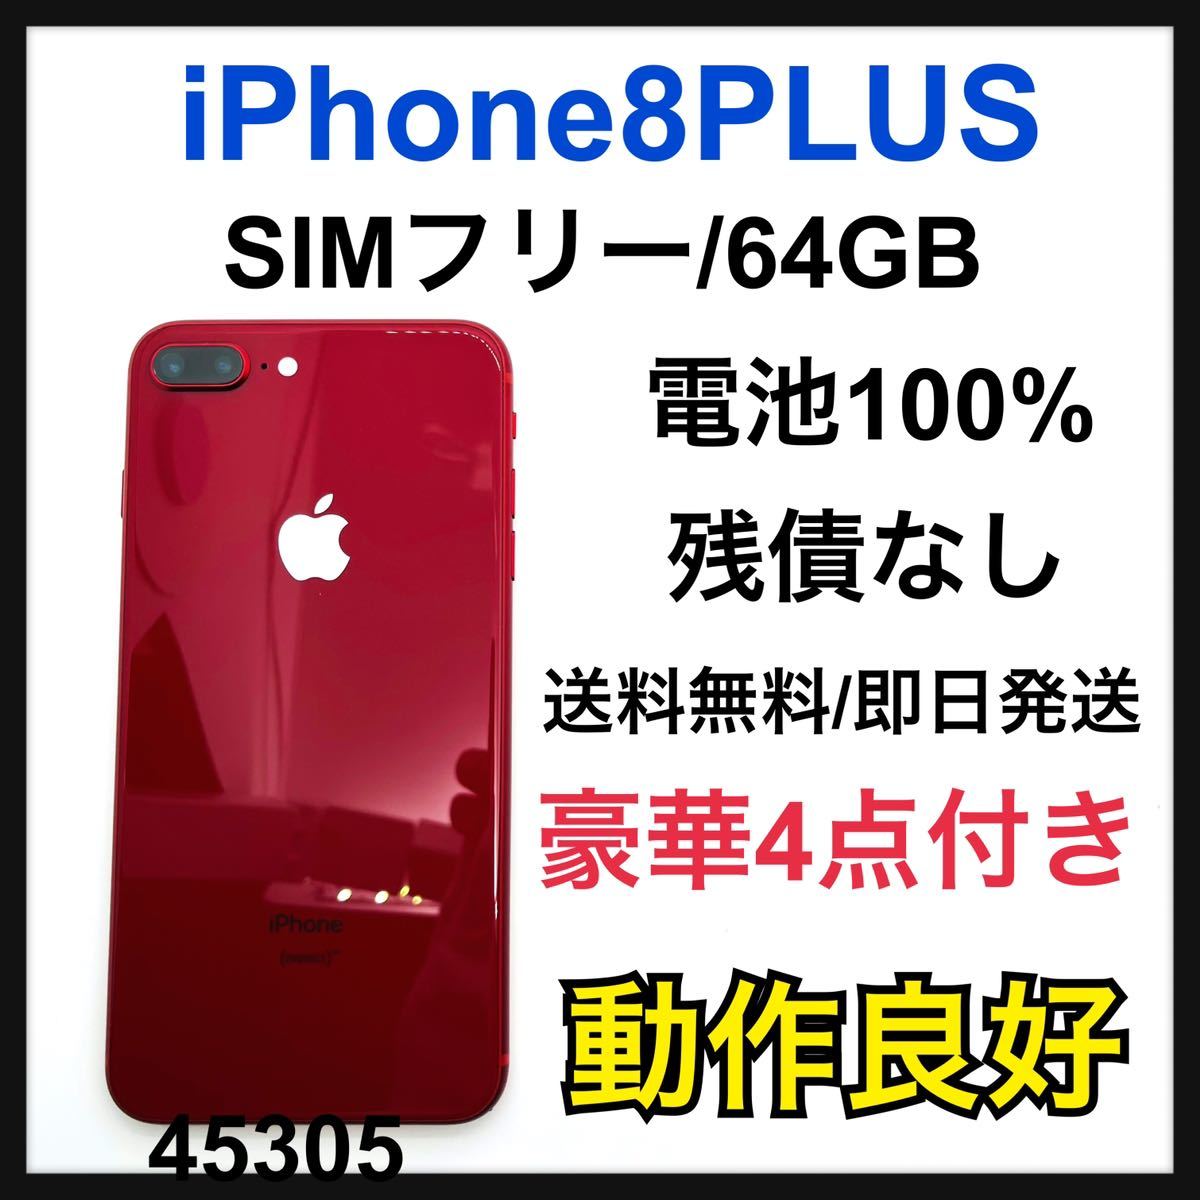 iPhone 8 Plus 本体 64 GB SIMフリー-connectedremag.com